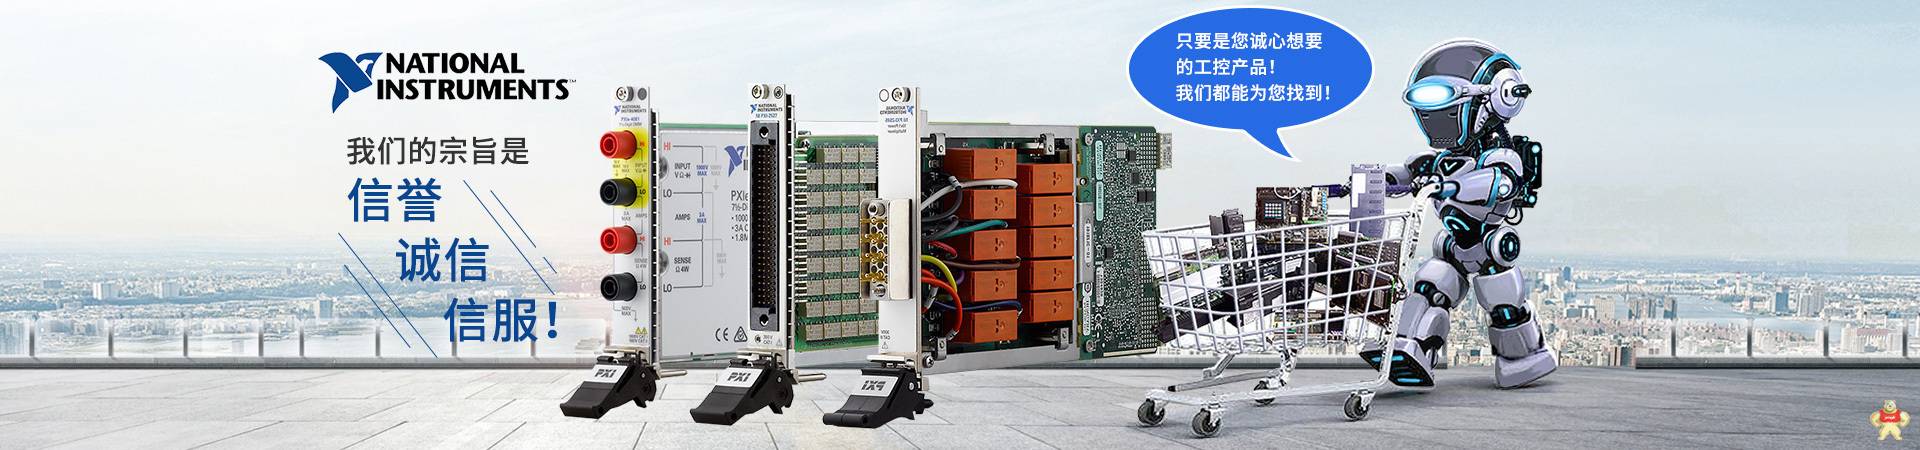 NI PXIE-8135模拟输出 多功能I/O模块 数据采集卡 板卡 控制器 电源模块 质保一年 